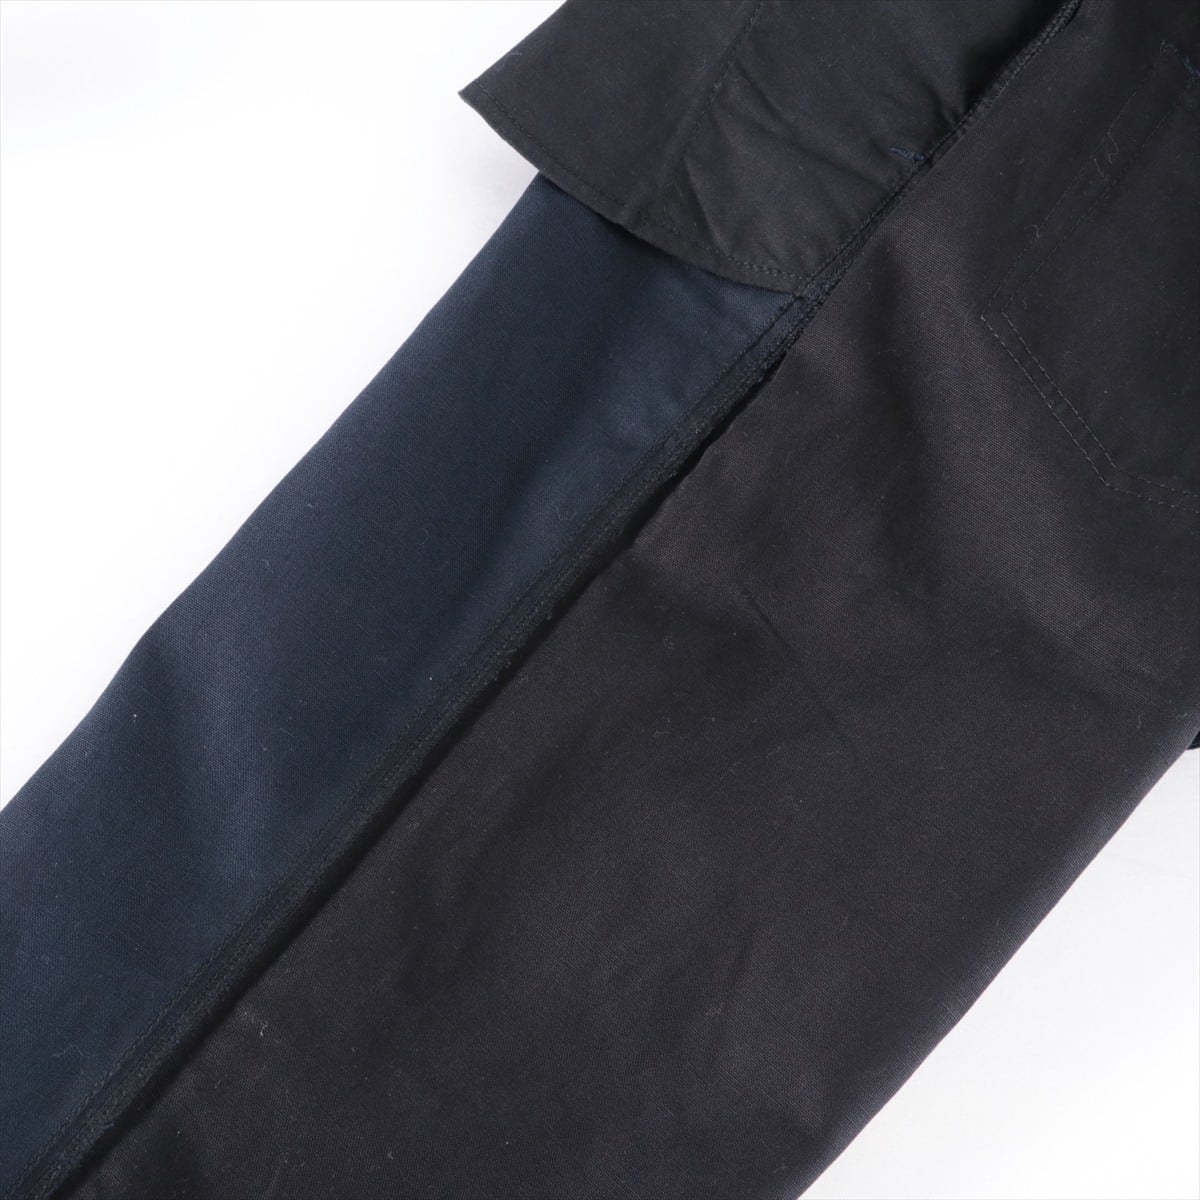 Loewe Cotton & linen Pants 44 Men's Navy blue